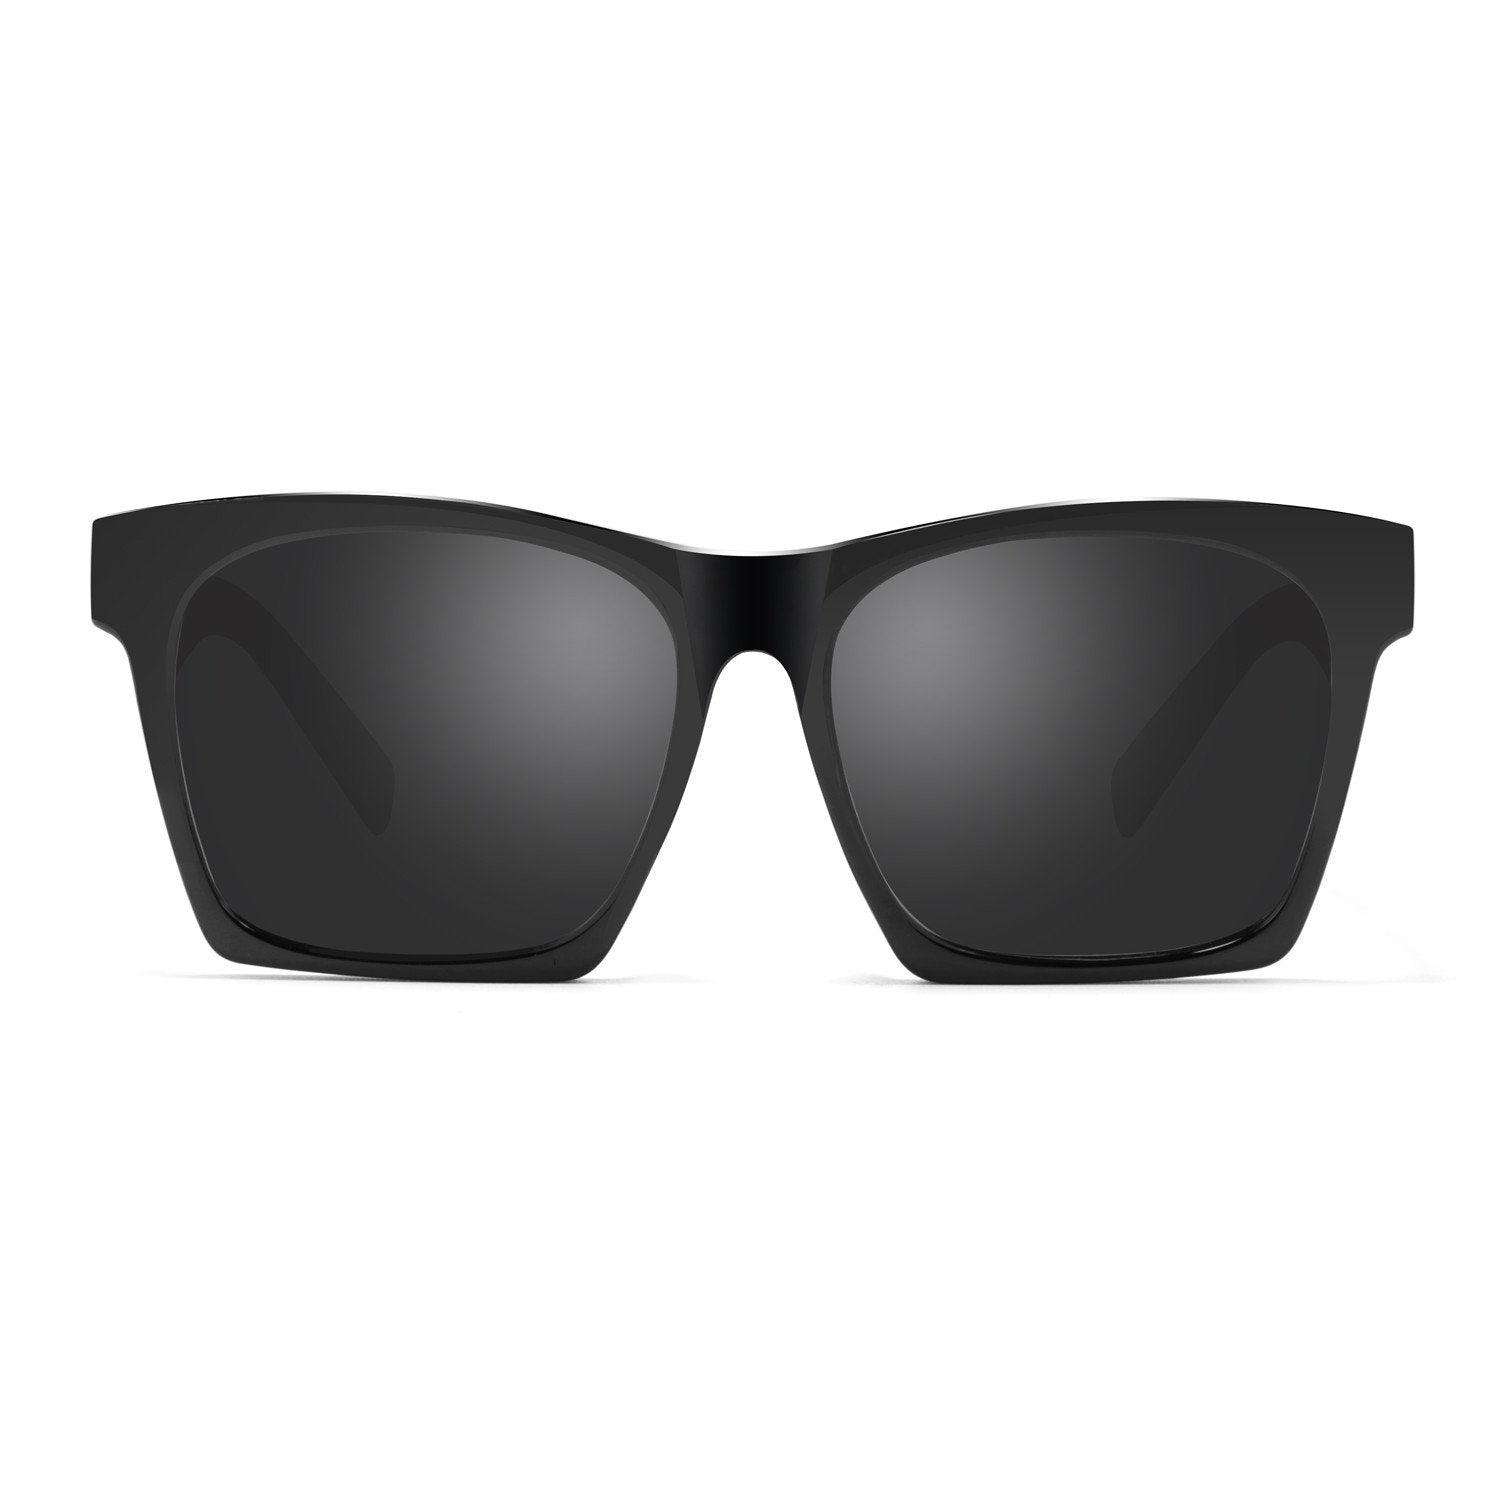 AKG Square Polarized Sunglasses 17059 - CrystalHillGlasses.com